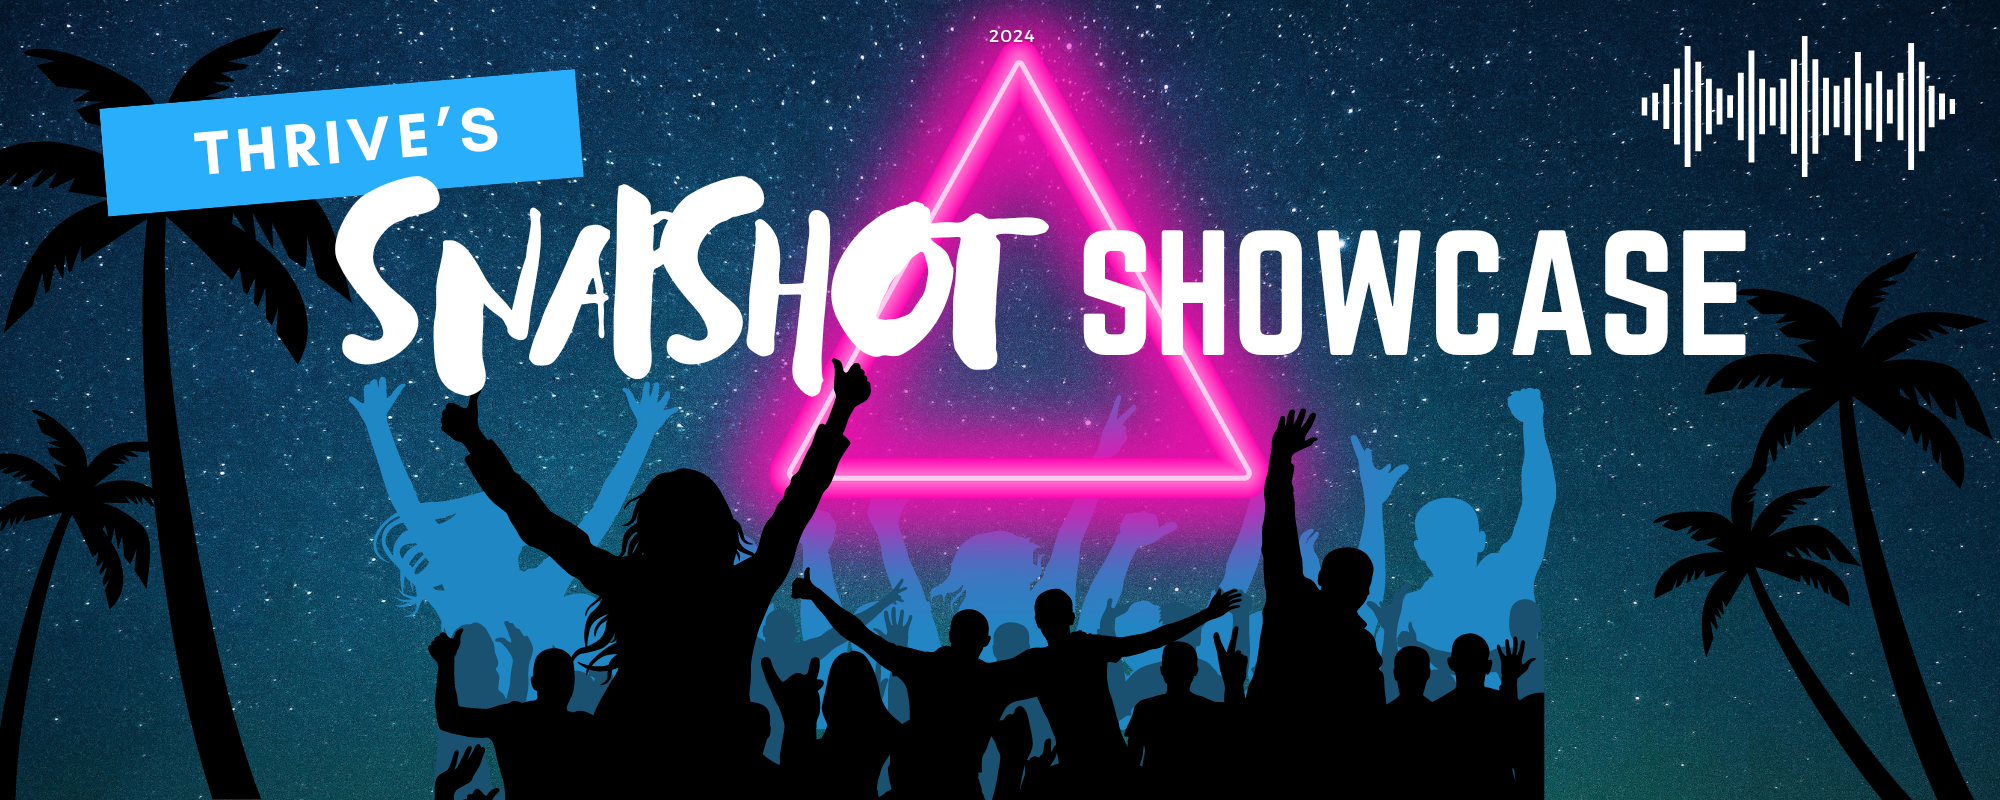 Snapshot Showcase